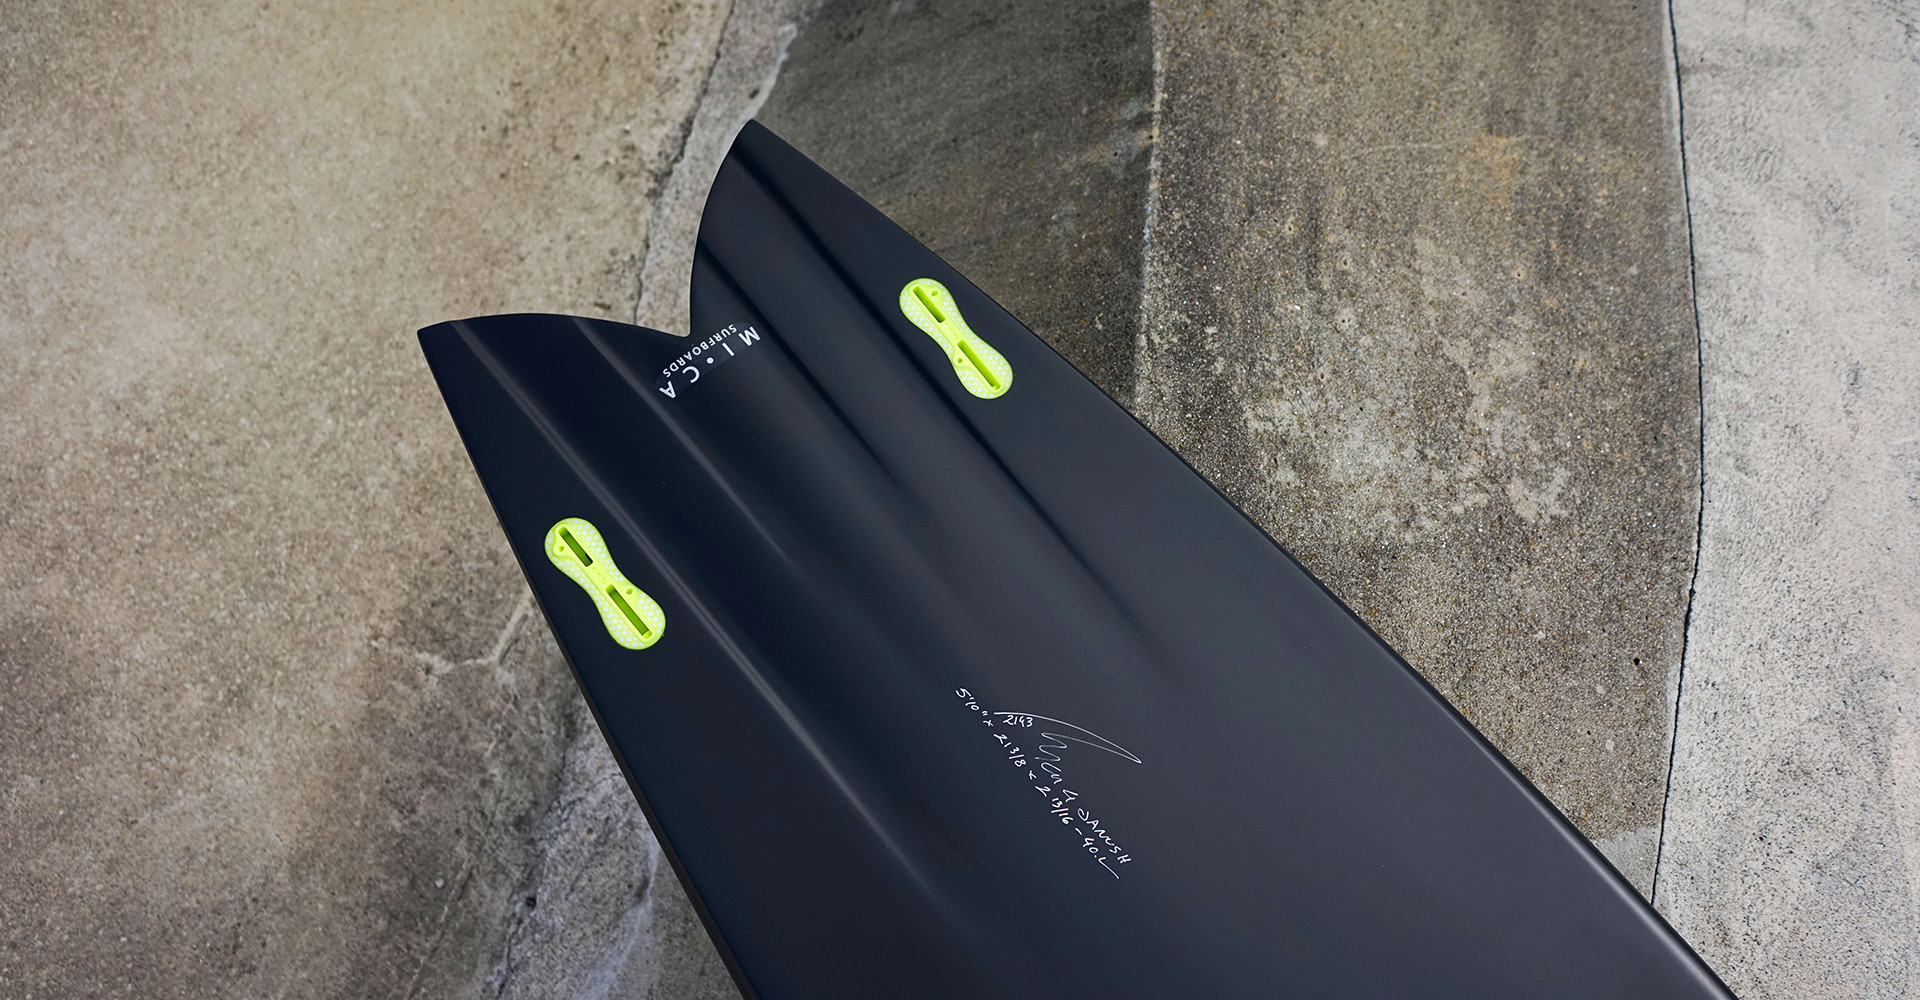 Jimi Model Retro Surfboard Black Matt Paint with Channels Twin Set Up